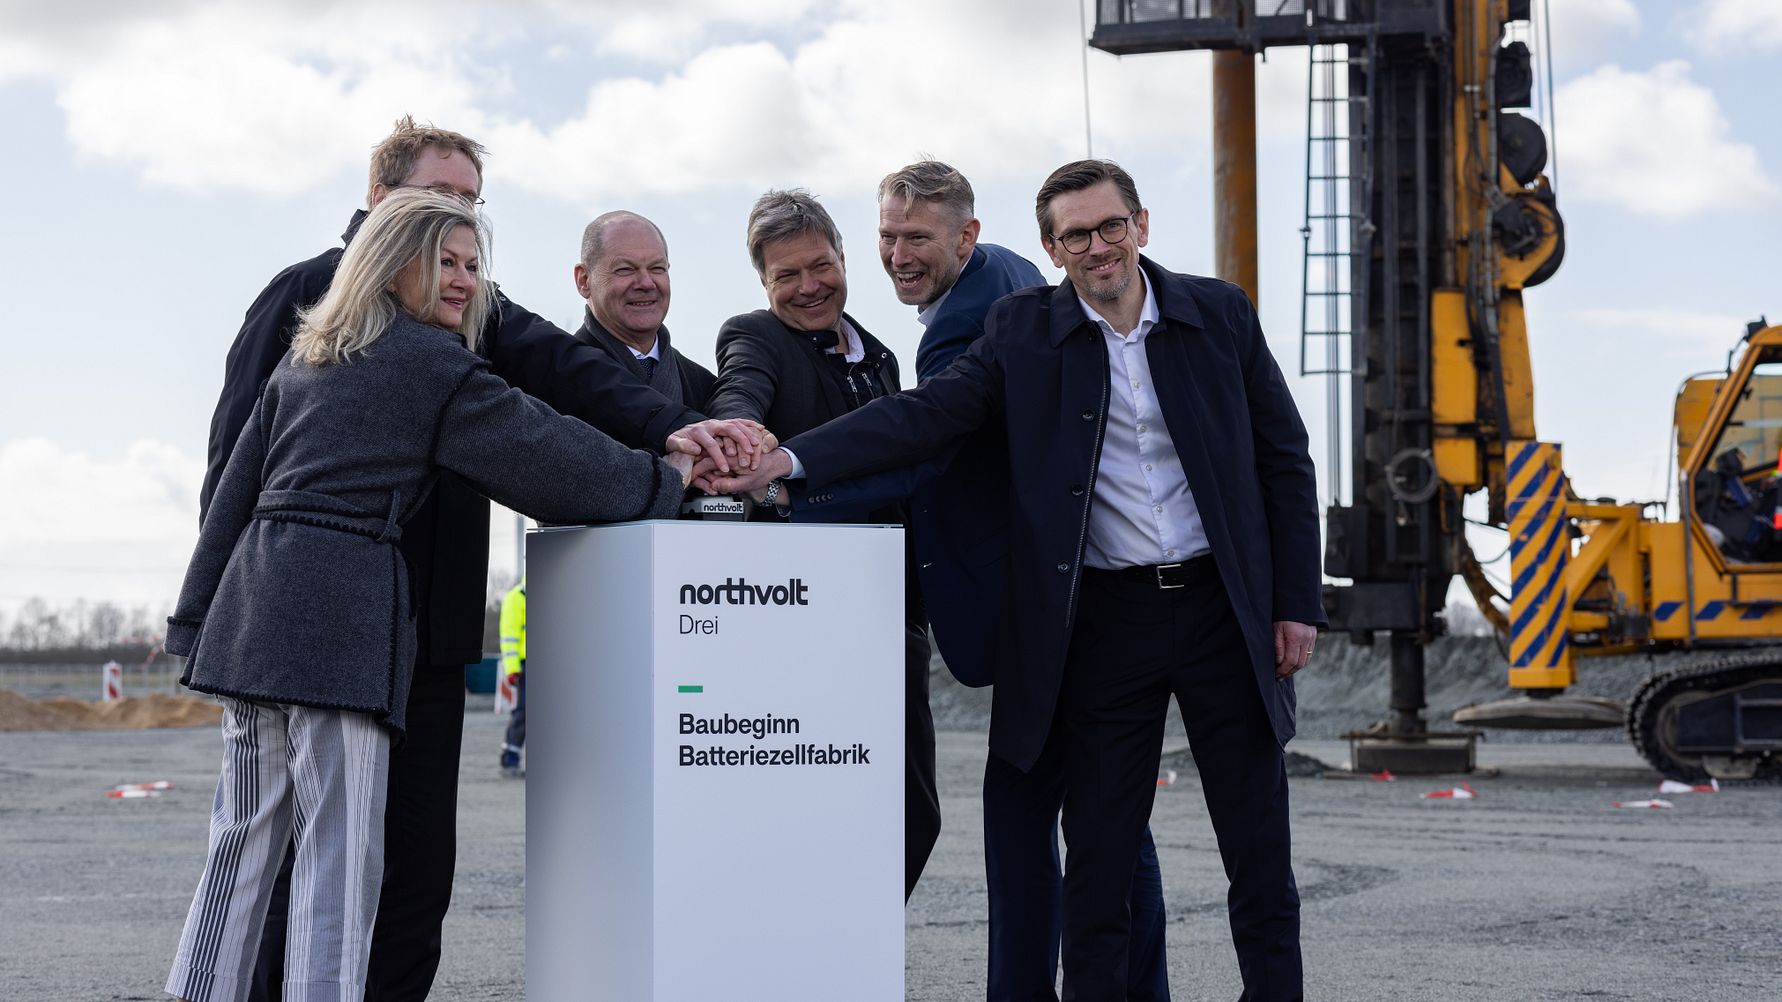 Der deutsche Bundeskanzler und der Vizekanzler feiern den Beginn der Bauarbeiten am Nordvoldtray